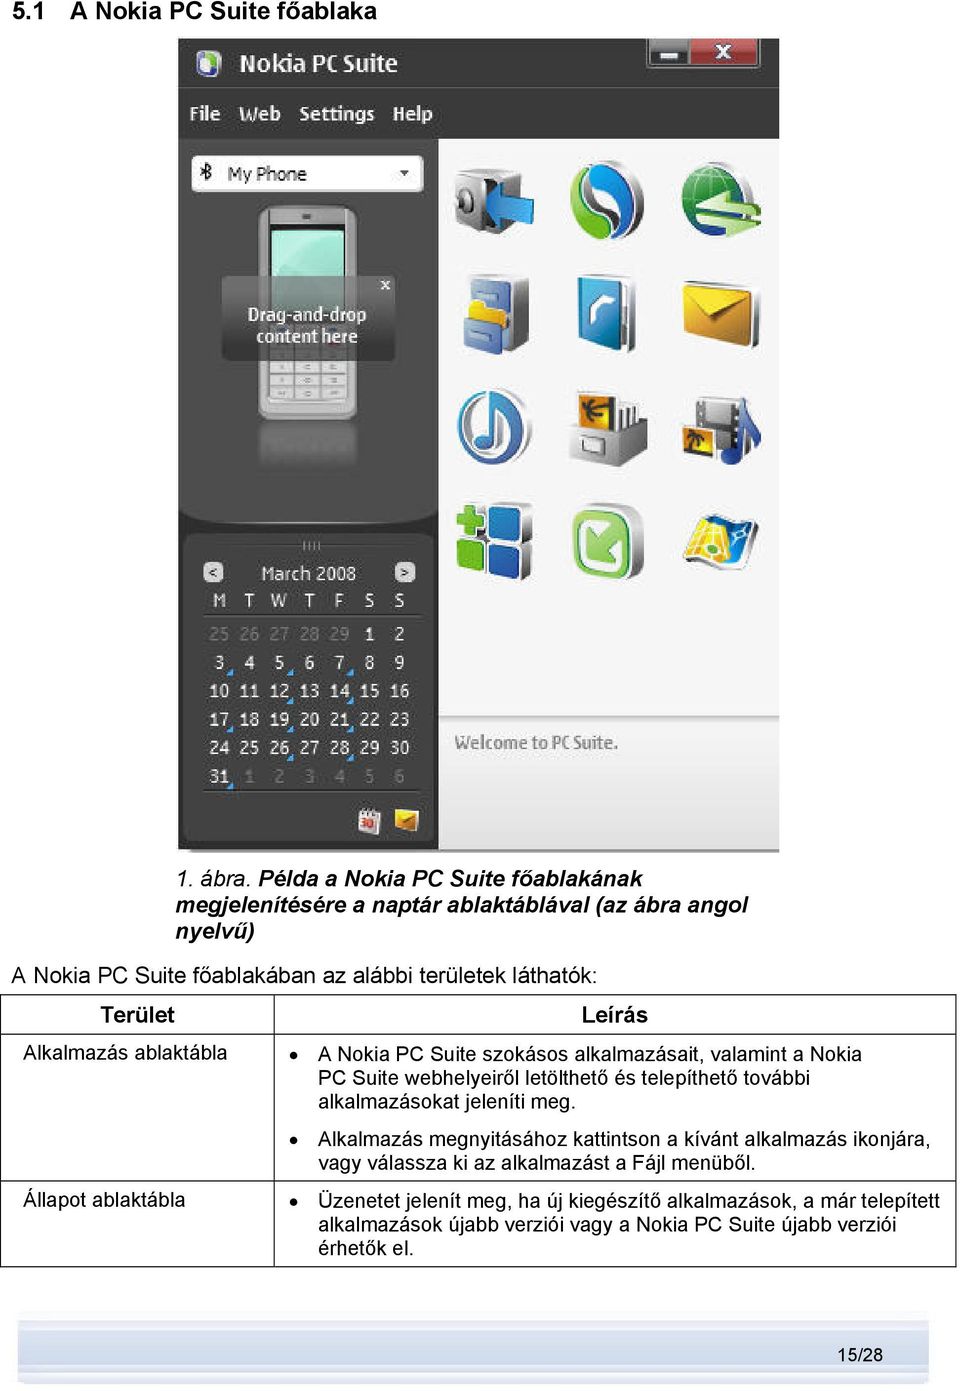 Alkalmazás ablaktábla Állapot ablaktábla Leírás A Nokia PC Suite szokásos alkalmazásait, valamint a Nokia PC Suite webhelyeiről letölthető és telepíthető további